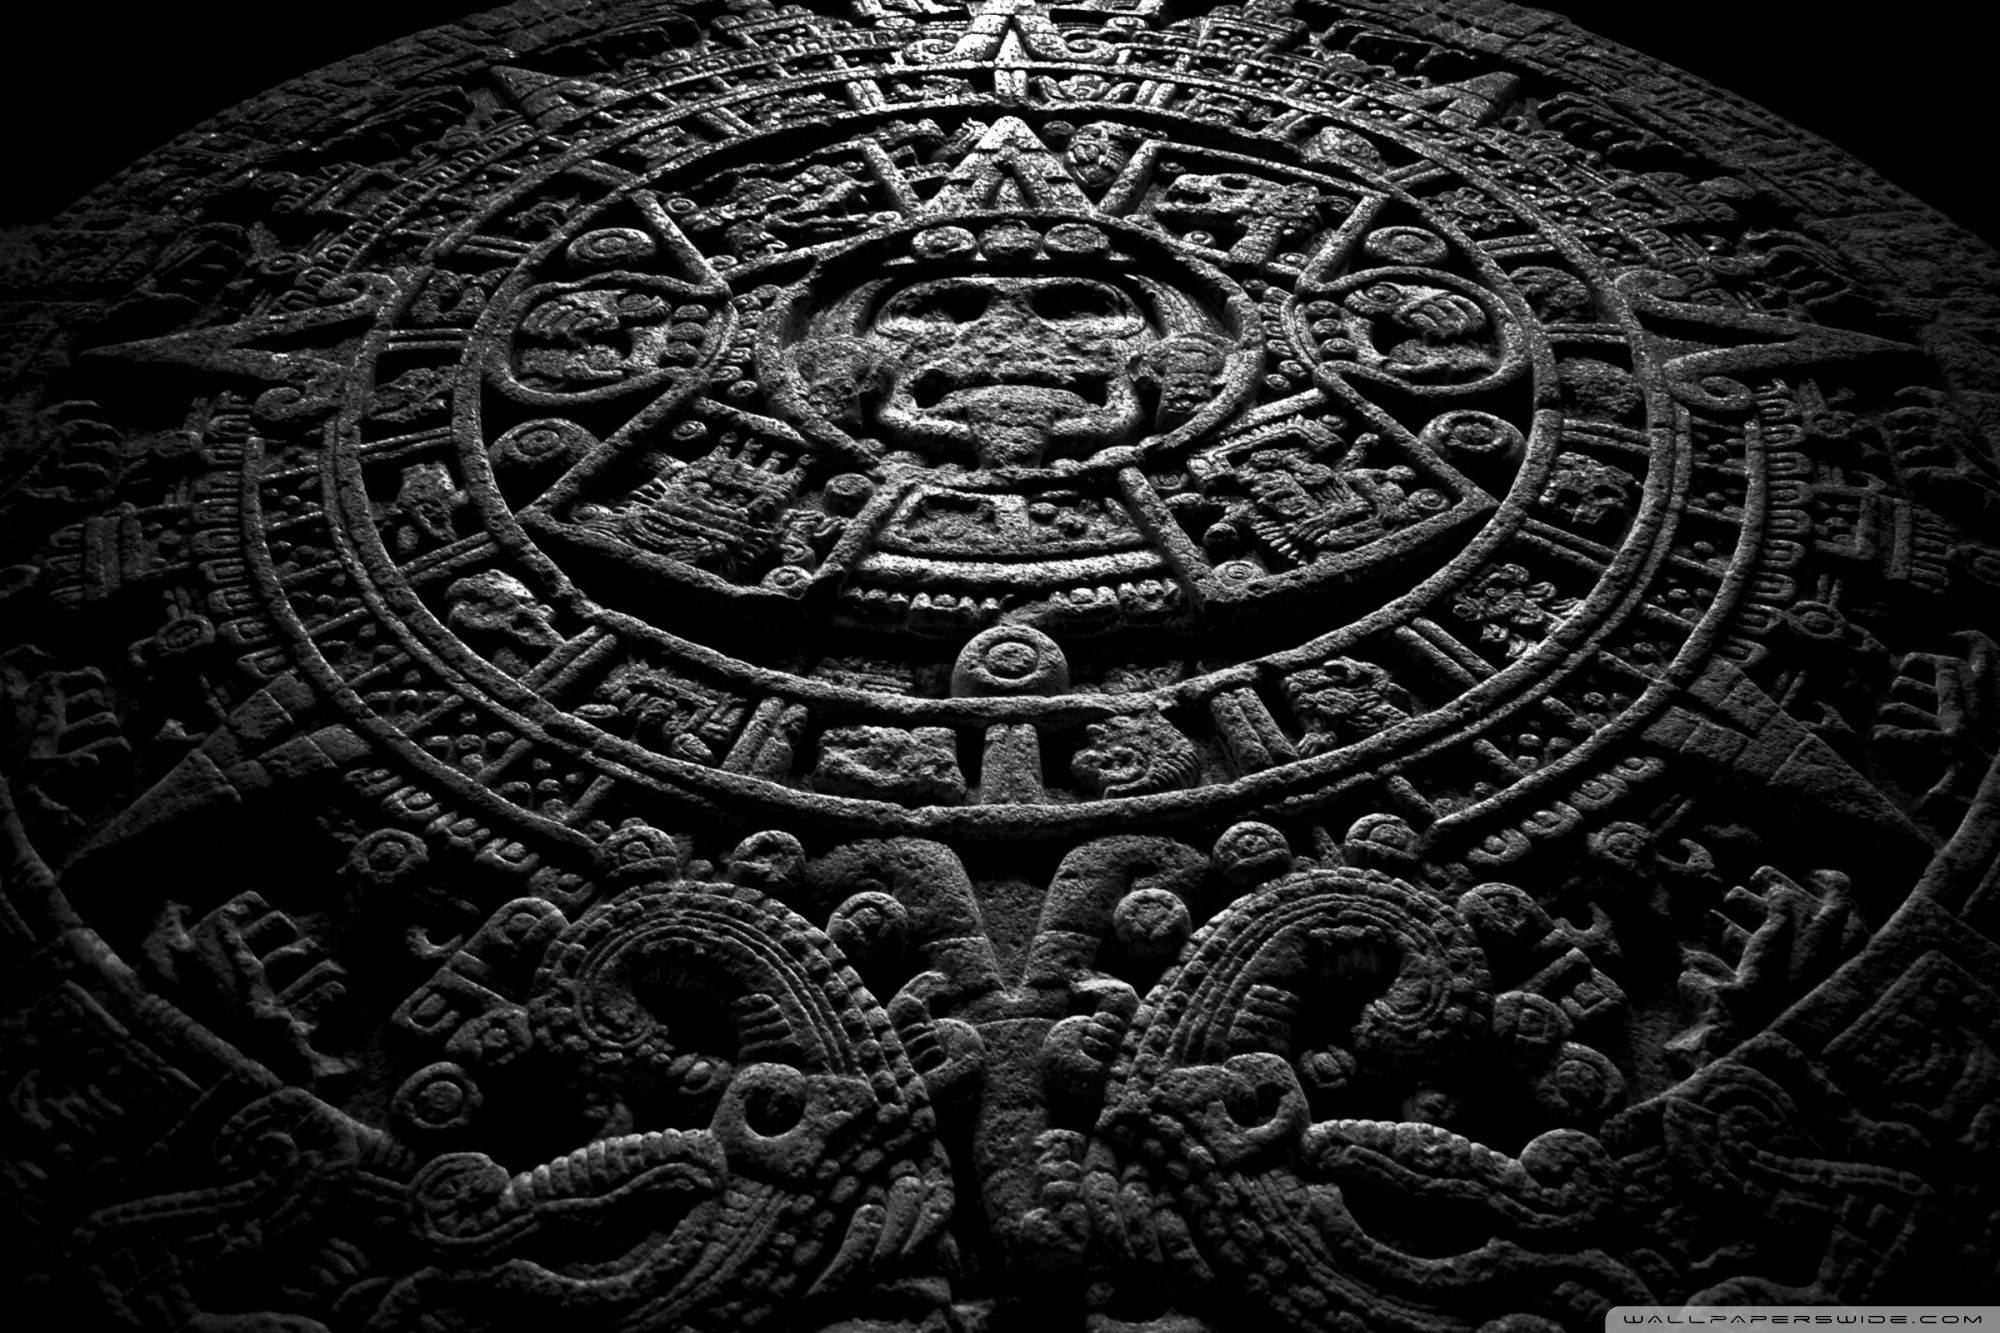 Quetzalcoatl Aztec Snake Stickers for Sale | TeePublic